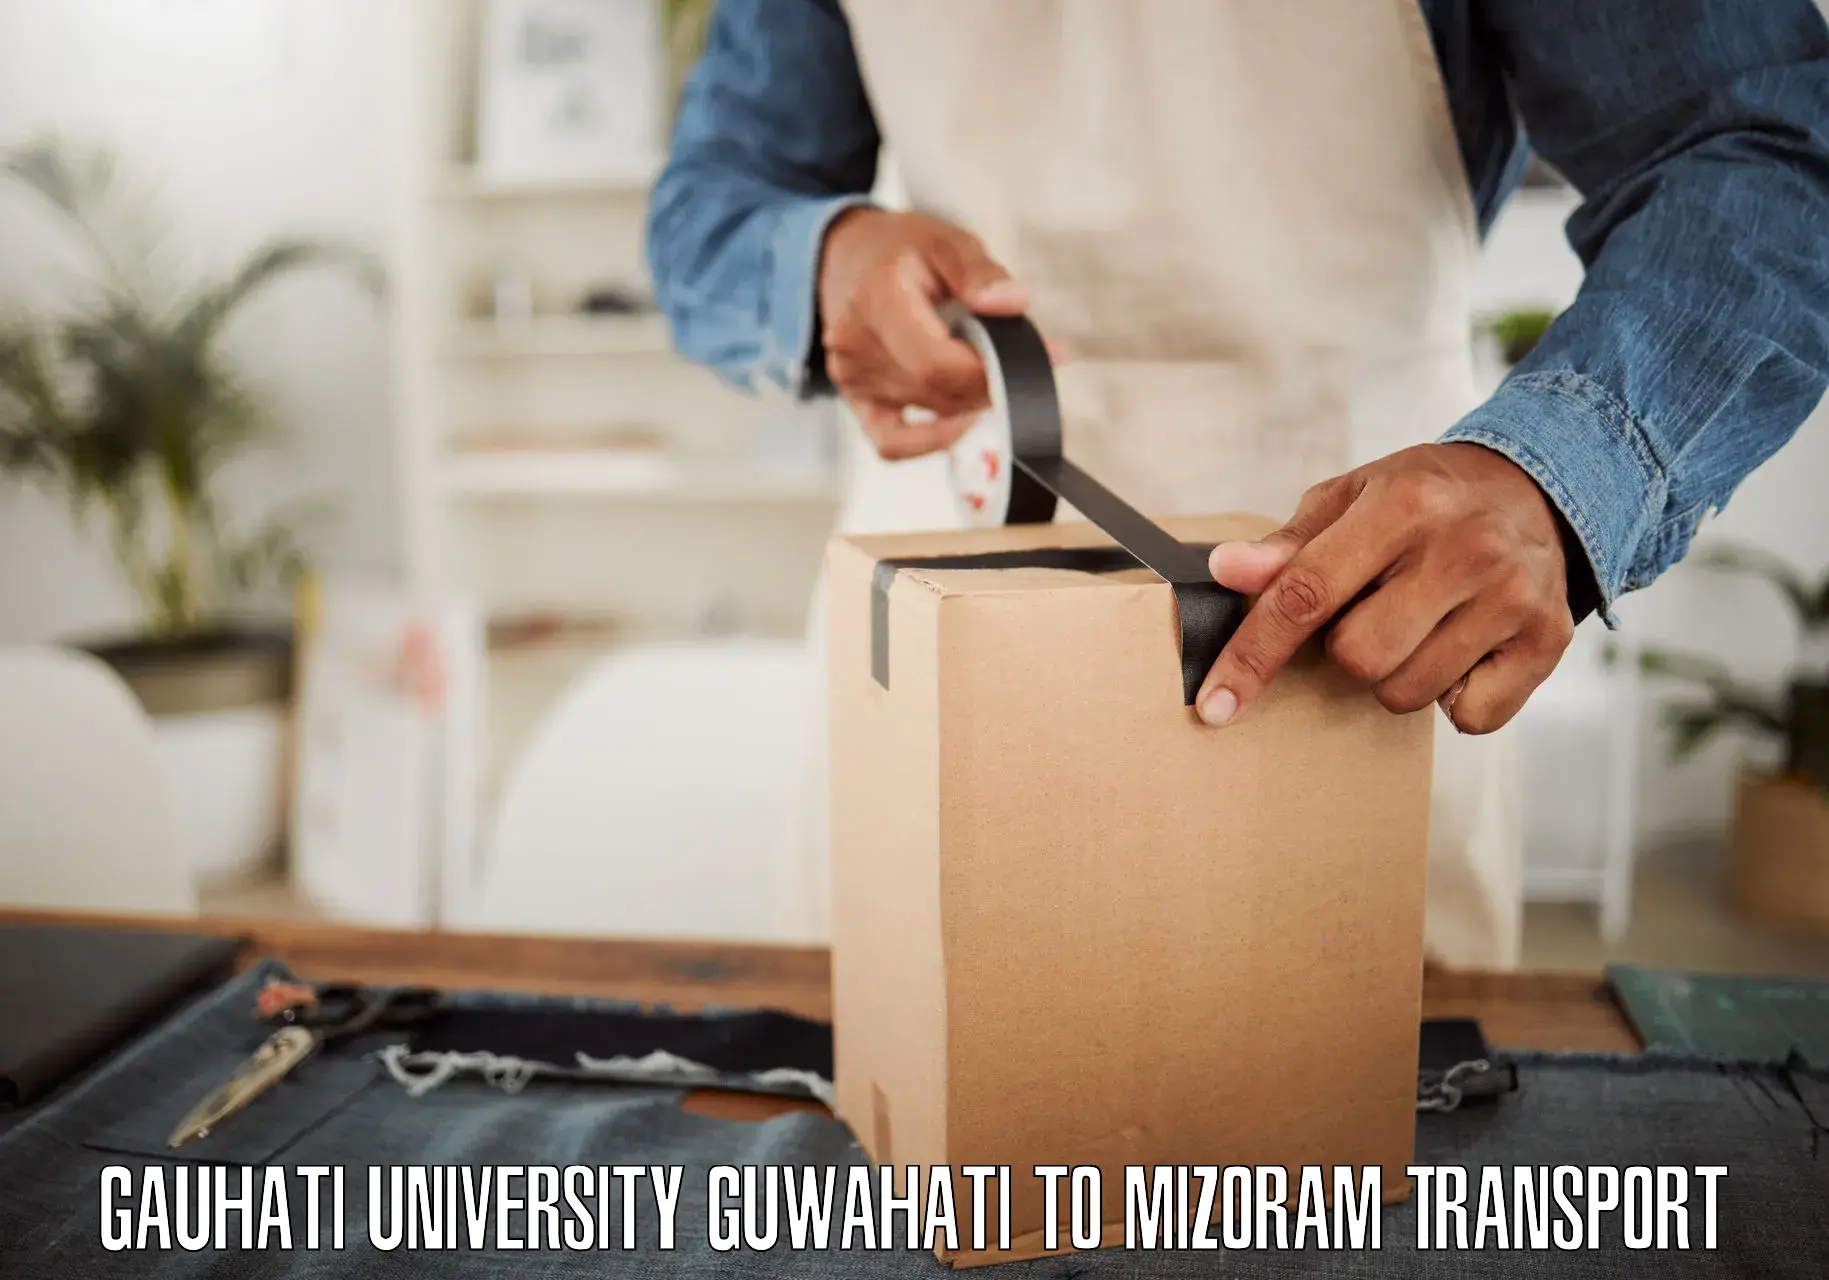 Pick up transport service Gauhati University Guwahati to NIT Aizawl